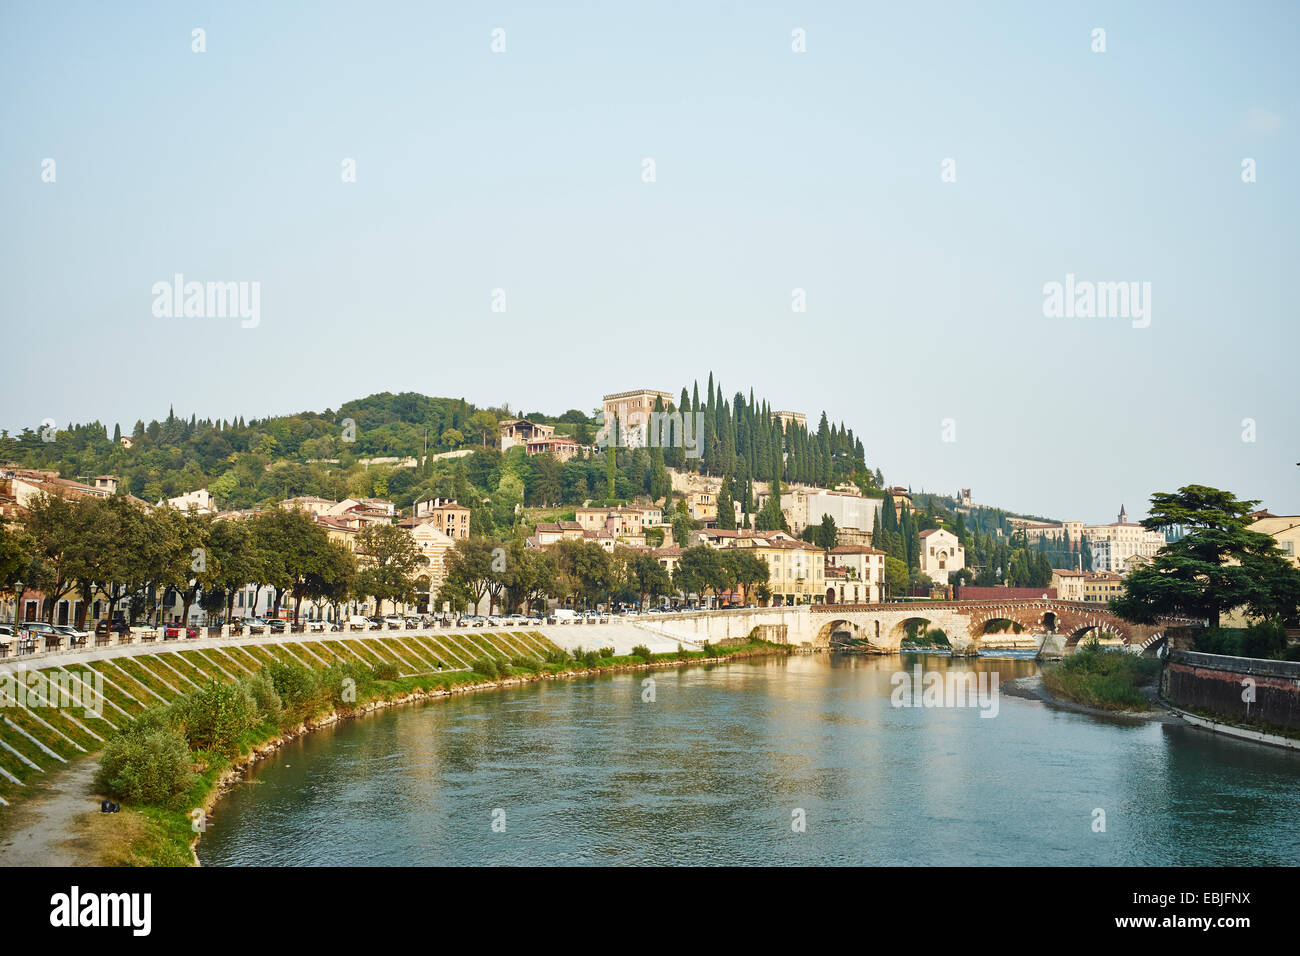 Adige River and cityscape, Verona, Italy Stock Photo